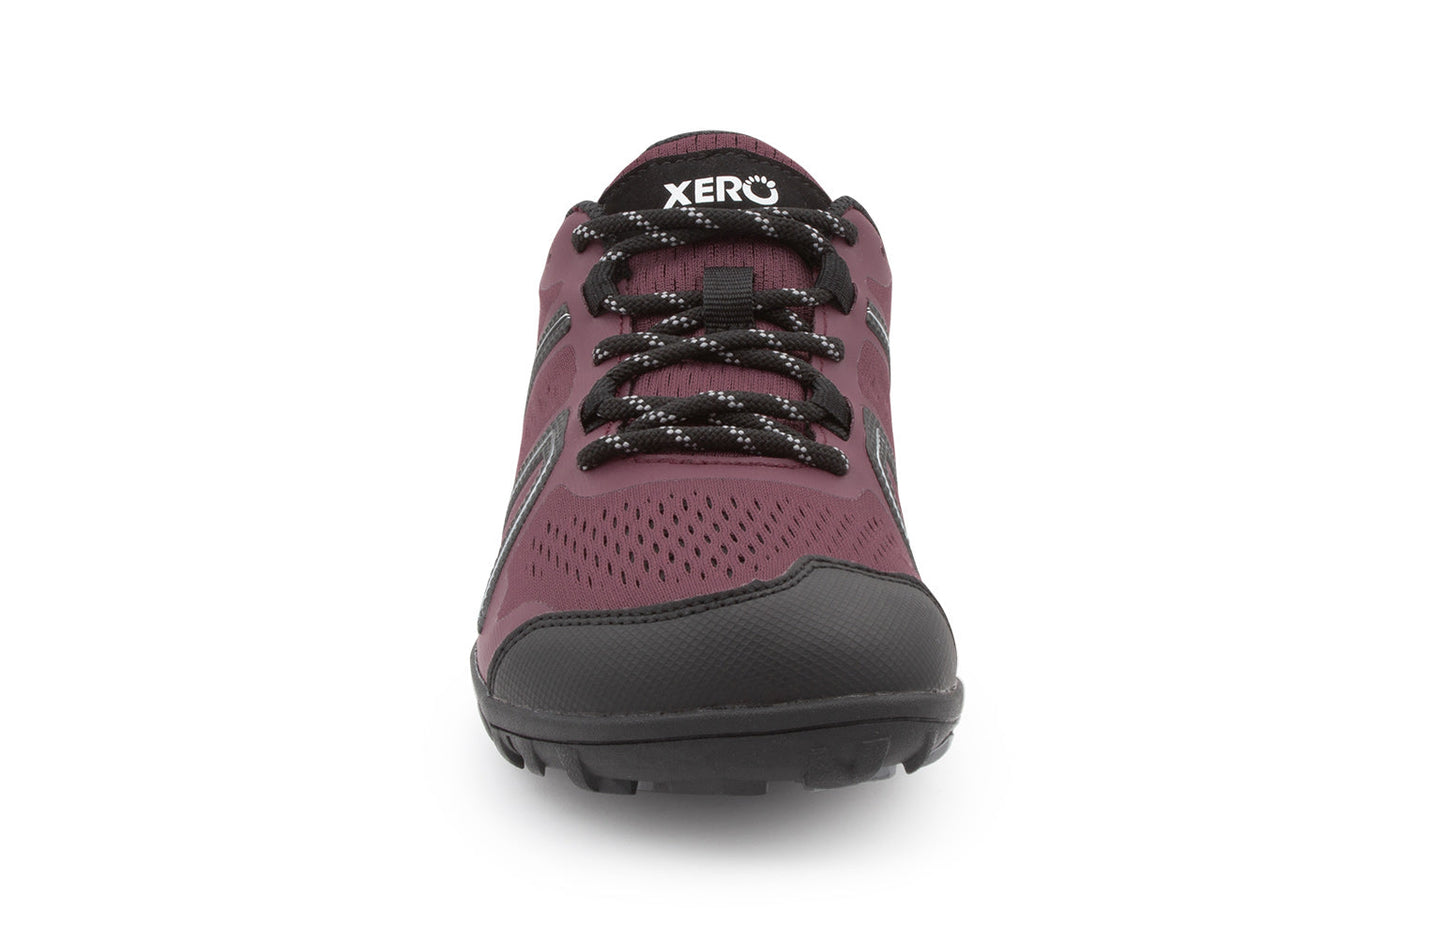 Xero Shoes Mesa Trail barfods trailsko til kvinder i farven muddy rose, forfra